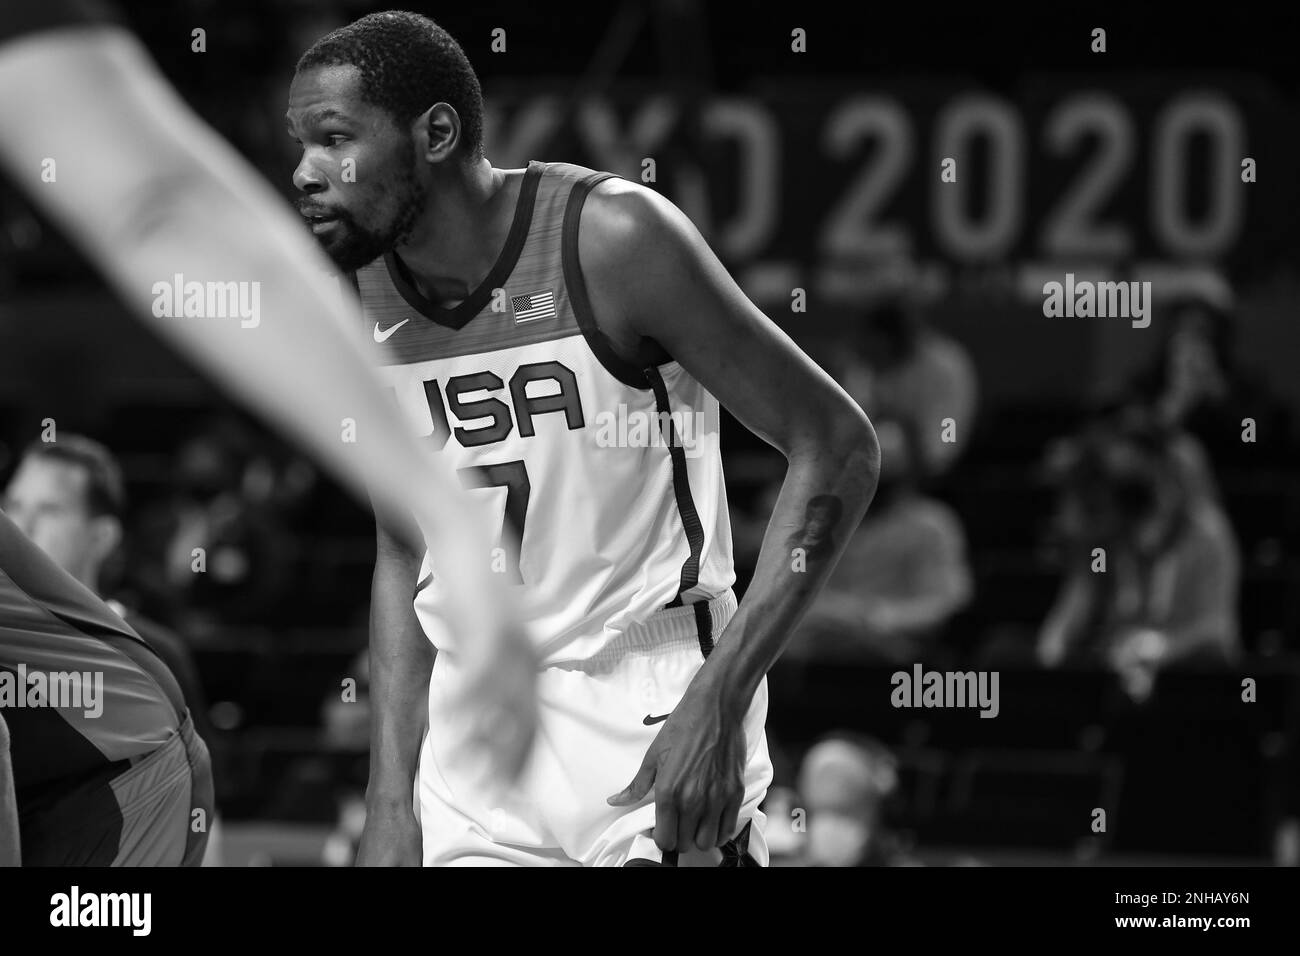 7 AOÛT 2021 : Kevin durant des États-Unis à la finale masculine de basket-ball entre les États-Unis et la France aux Jeux Olympiques de Tokyo 2020 (photo de Mickael Chavet/RX) Banque D'Images